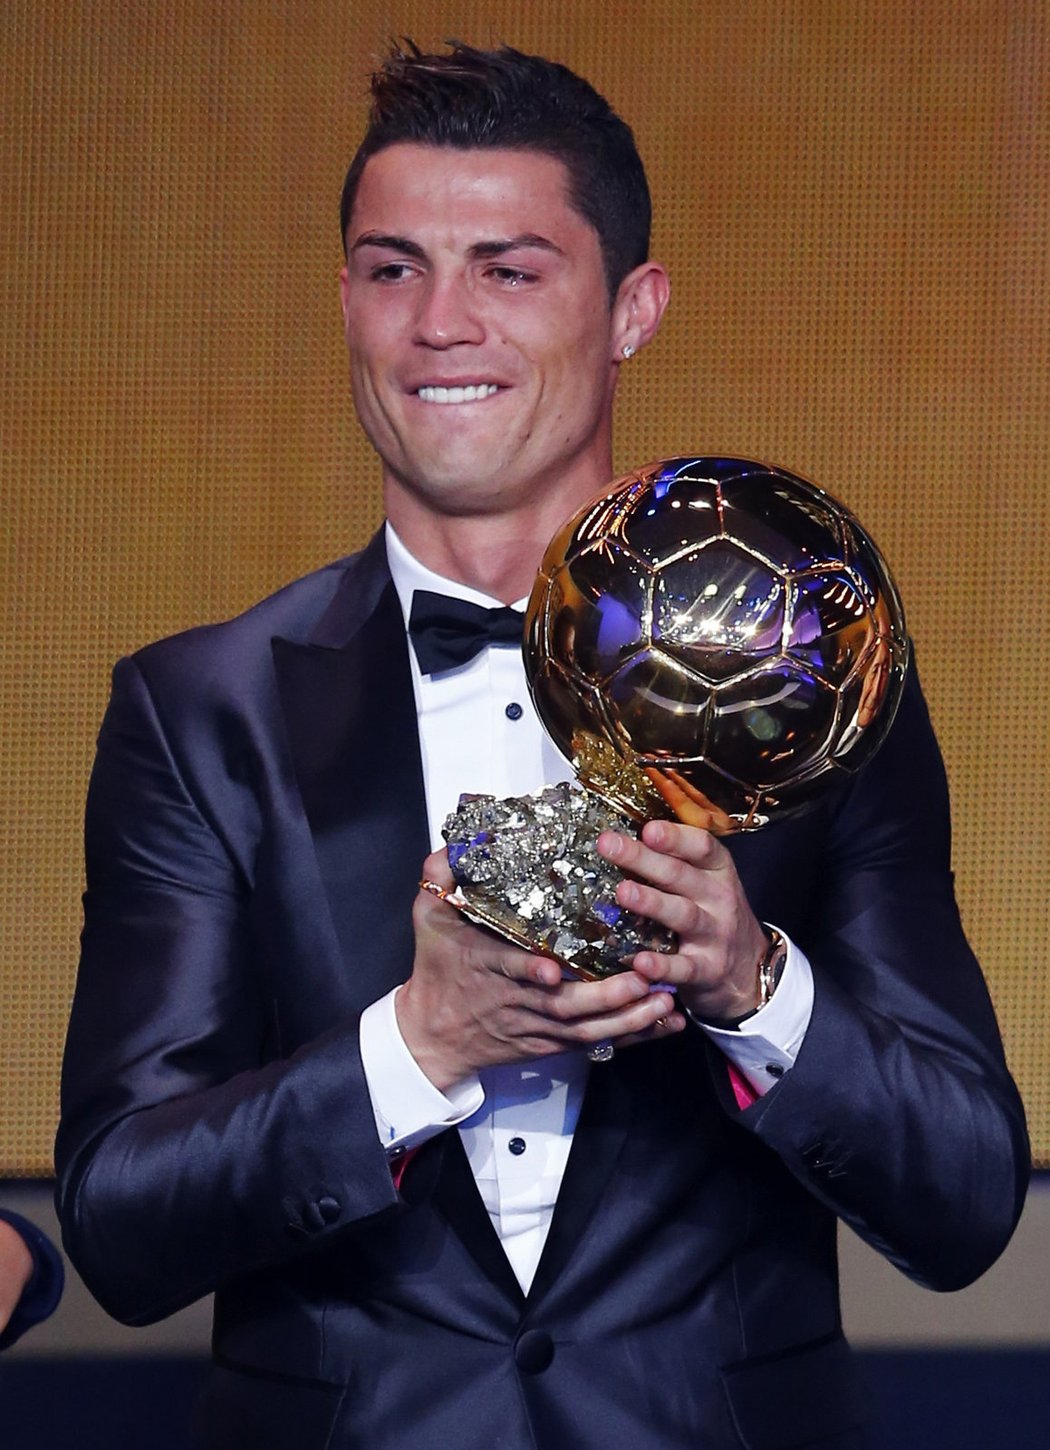 Se slzami v očích i úsměvem na tváři pózoval fotografům nejlepší fotbalista planety Cristiano Ronaldo po zisku Zlatého míče. Nejcennější individuální trofej převzal na slavnostním ceremoniálu v Curychu.